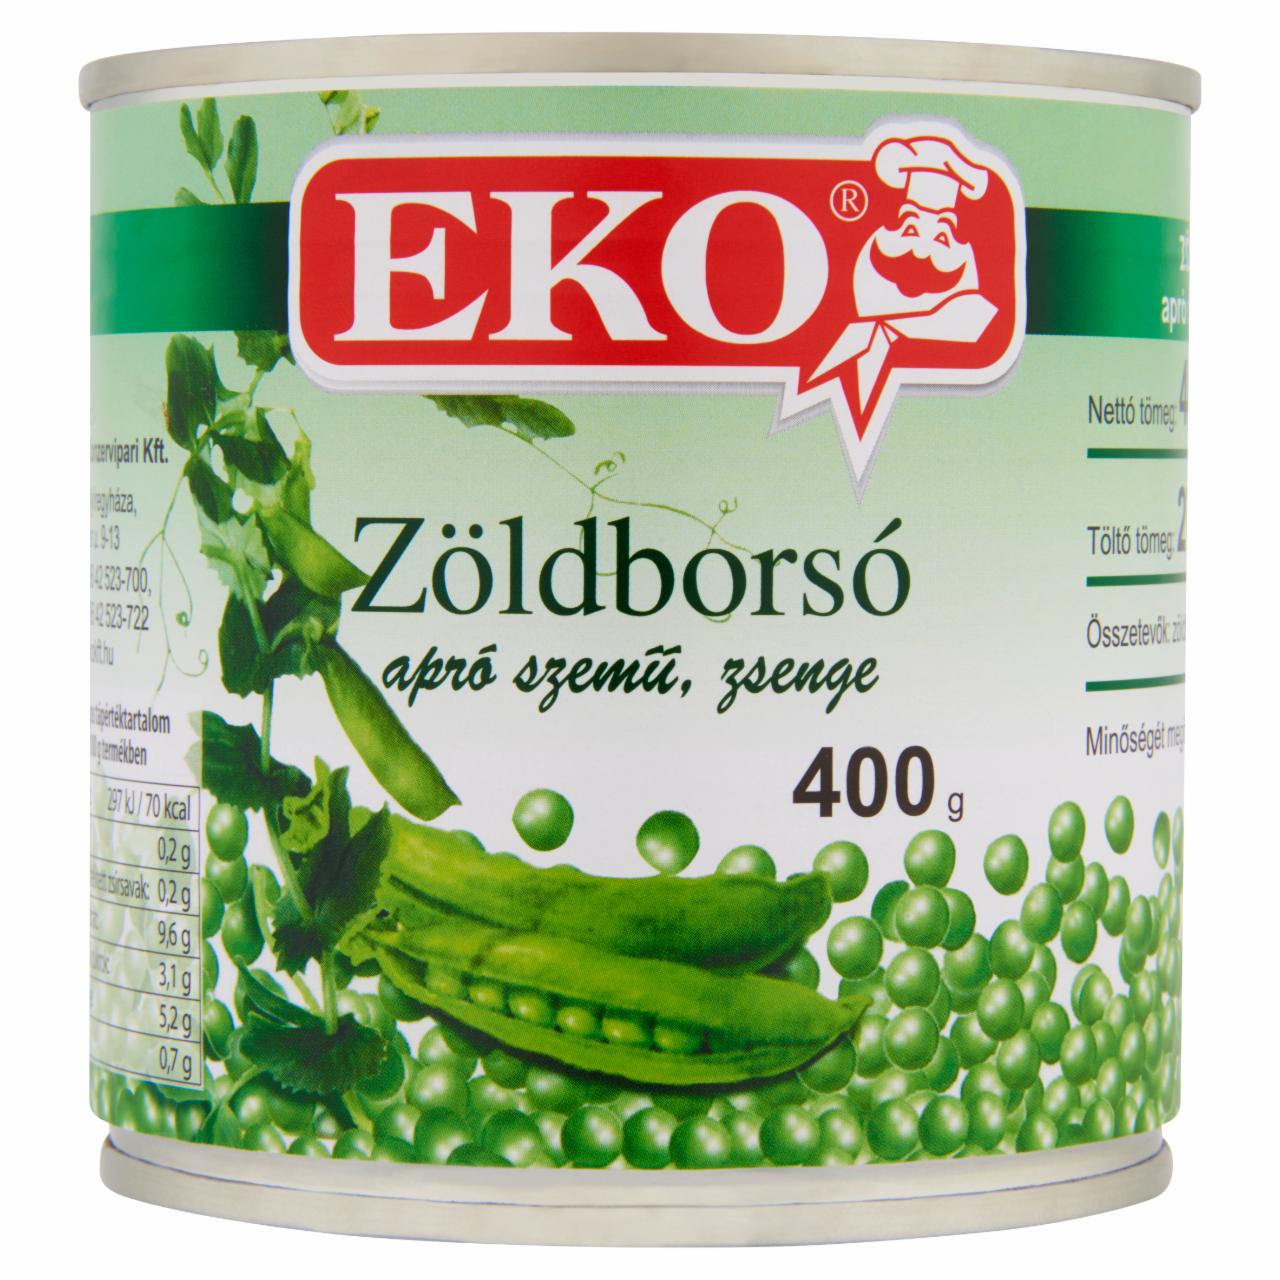 Képek - Eko zöldborsó 400 g